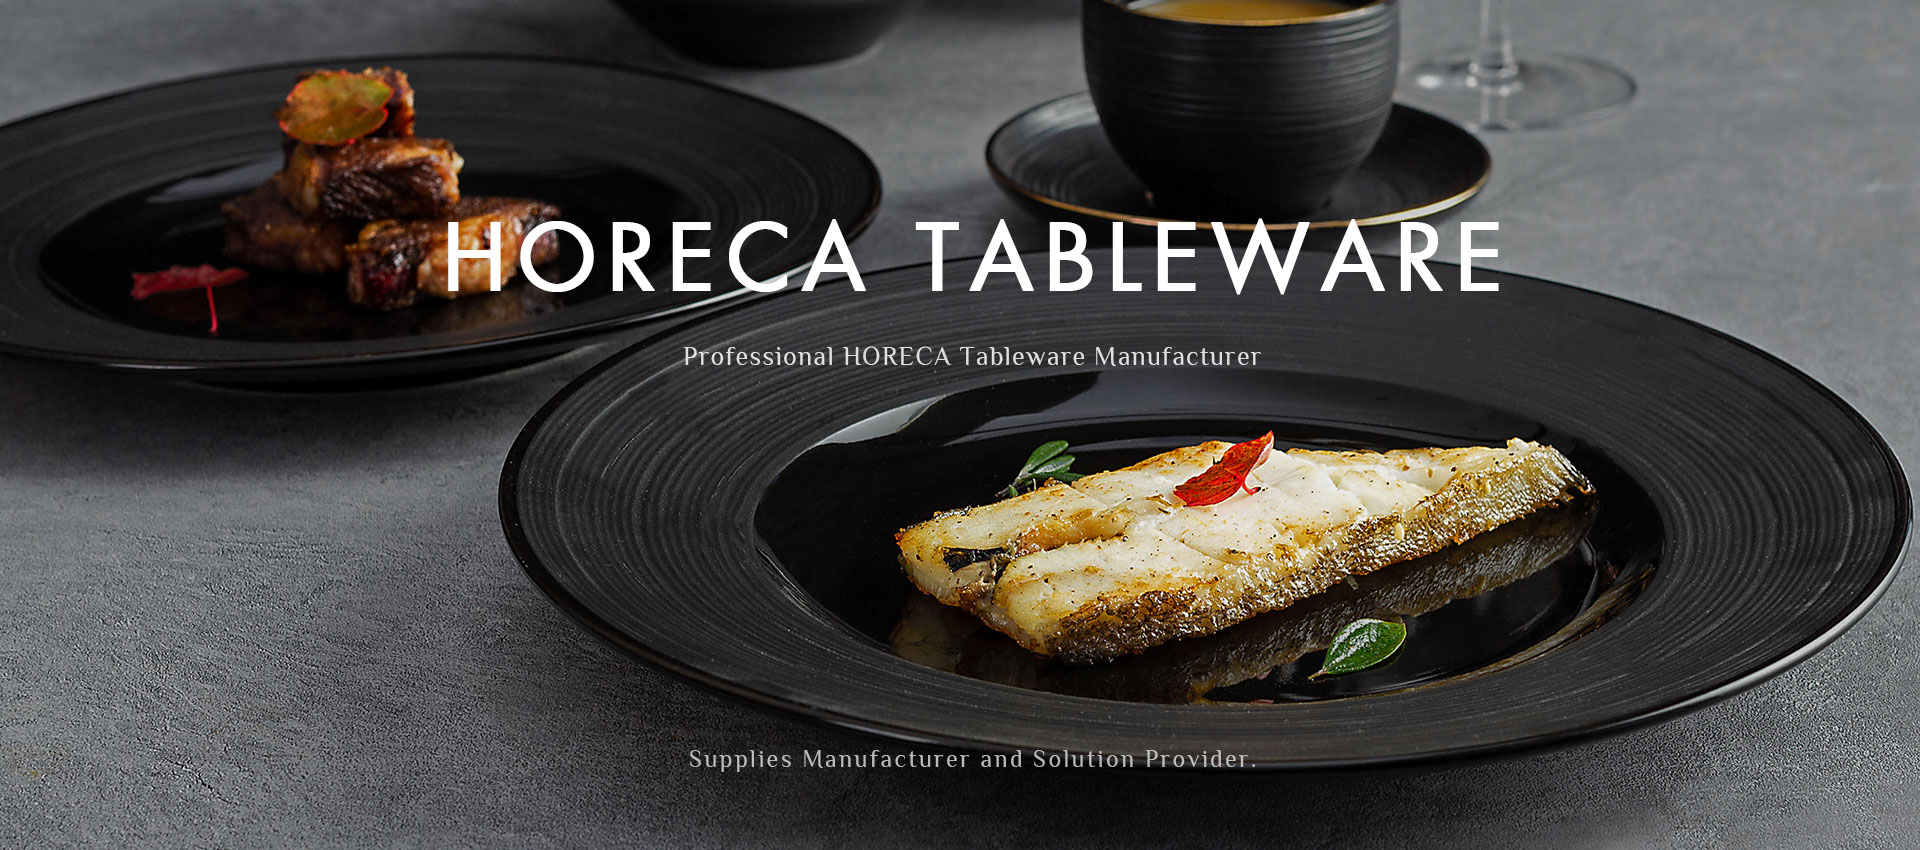 Professional HORECA Tableware Manufacturer